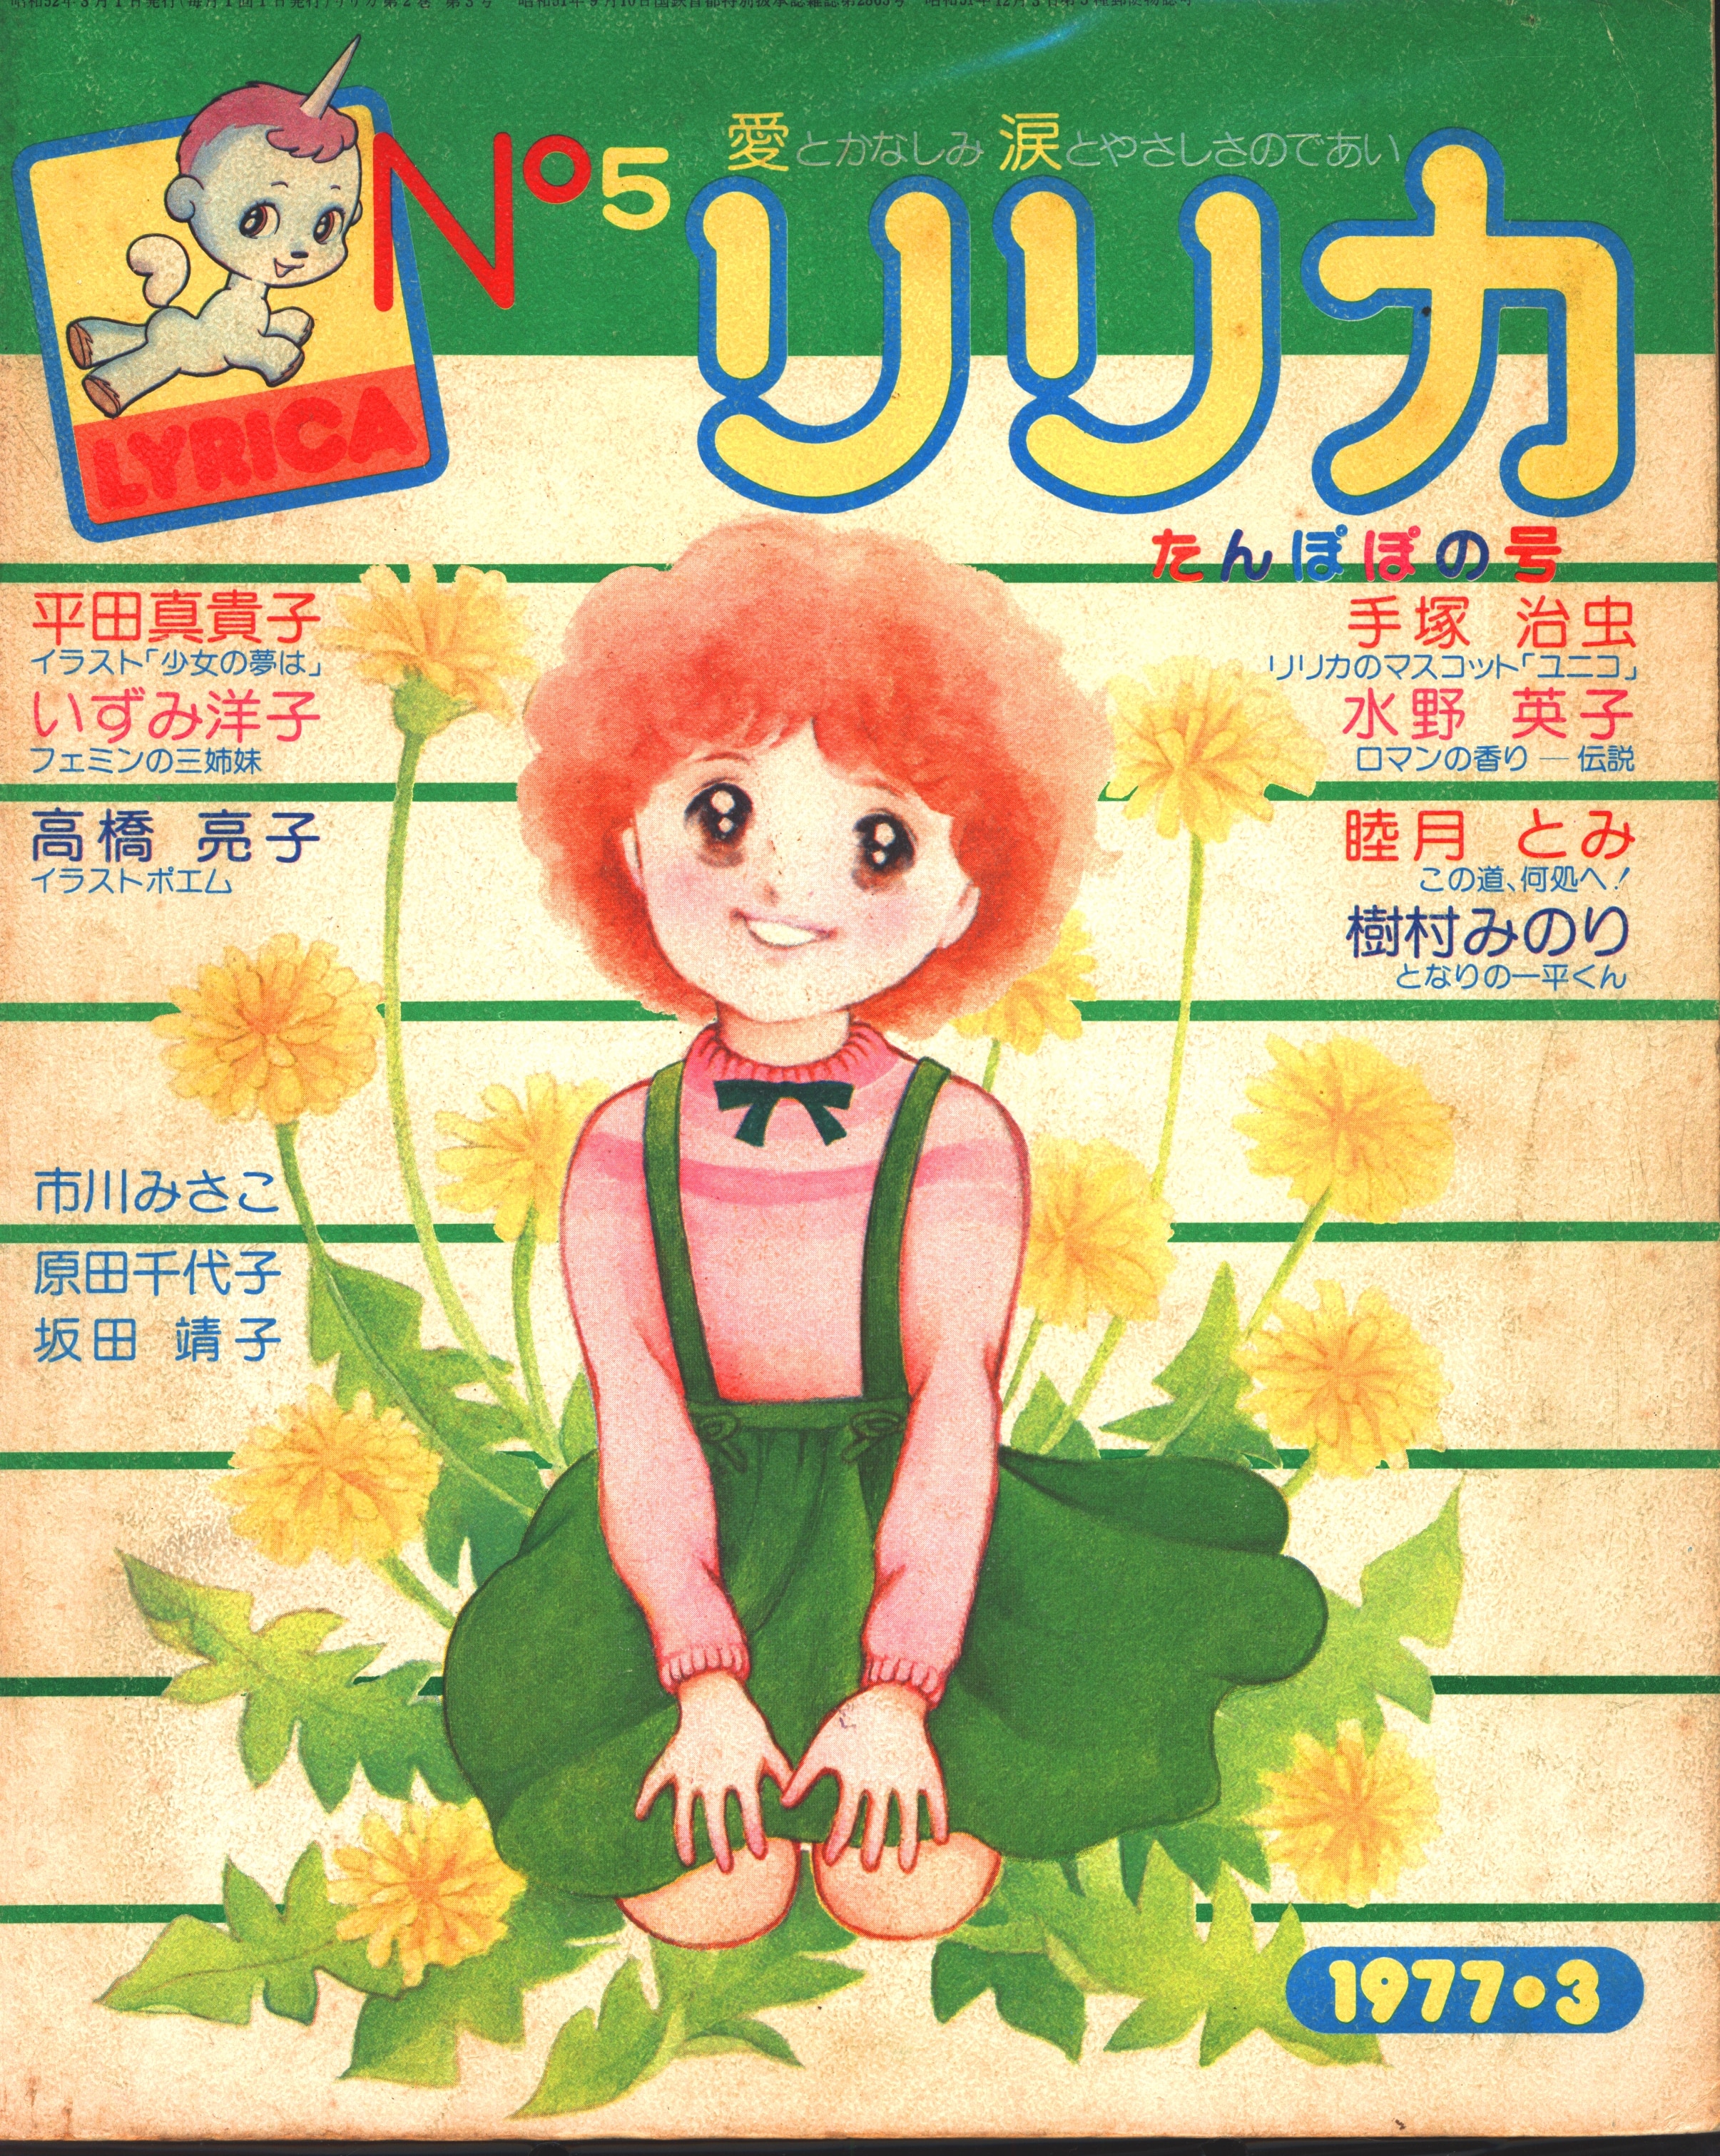 Sanrio Lyrica 1977 March Issue 5 Issue Of Dandelion 5 Mandarake Online Shop